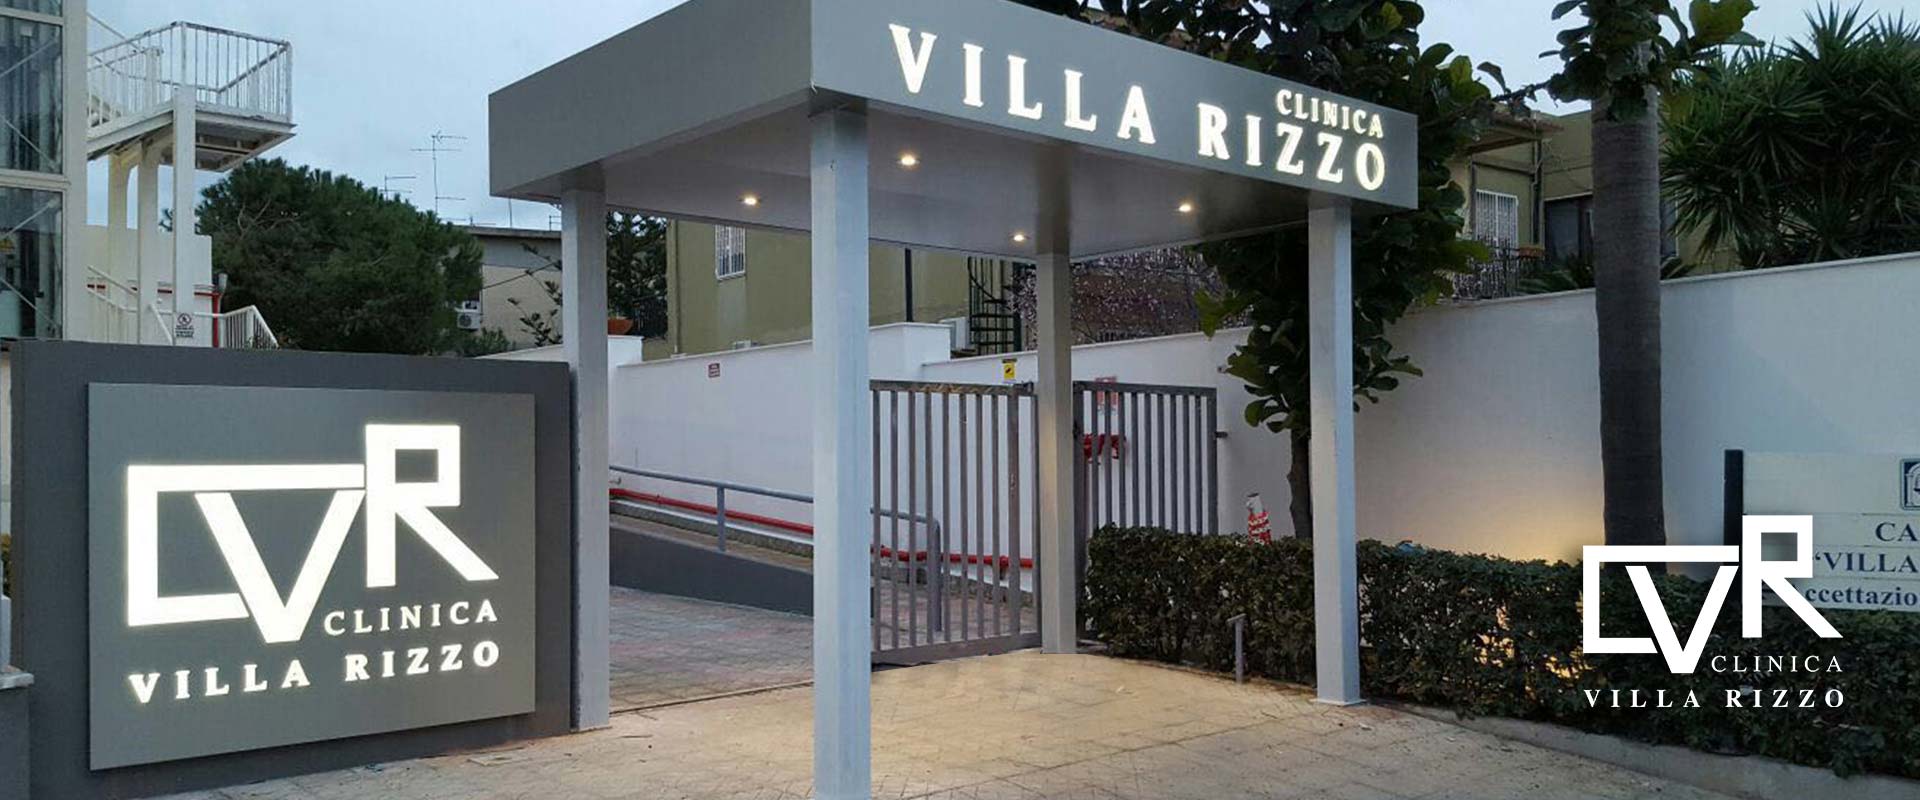 Clinica Villa Rizzo